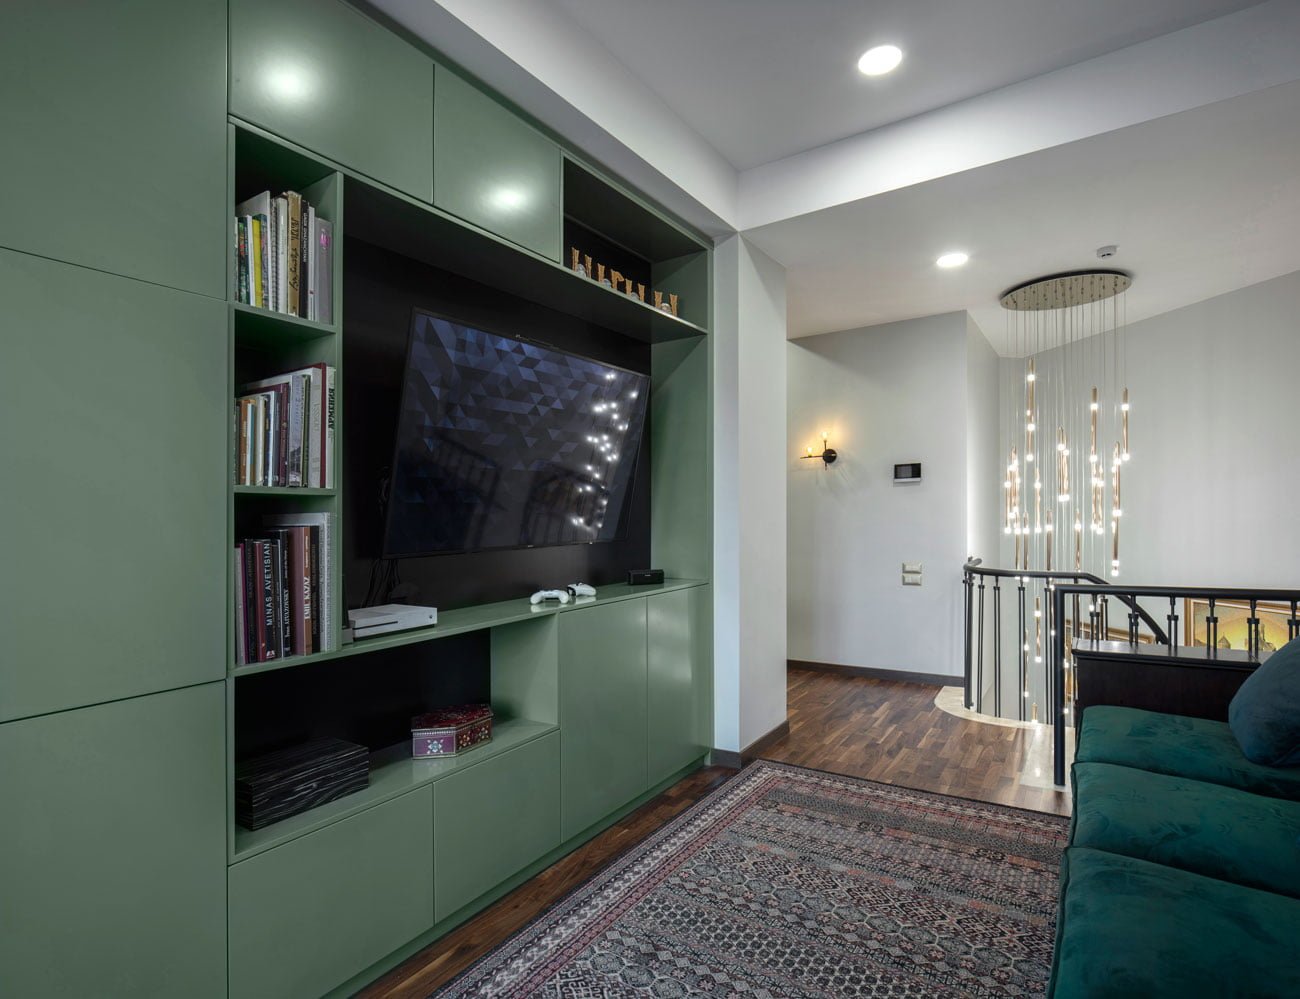 фото лобби зоны для уединения с телевизором, книжным шкафом и большим диваном